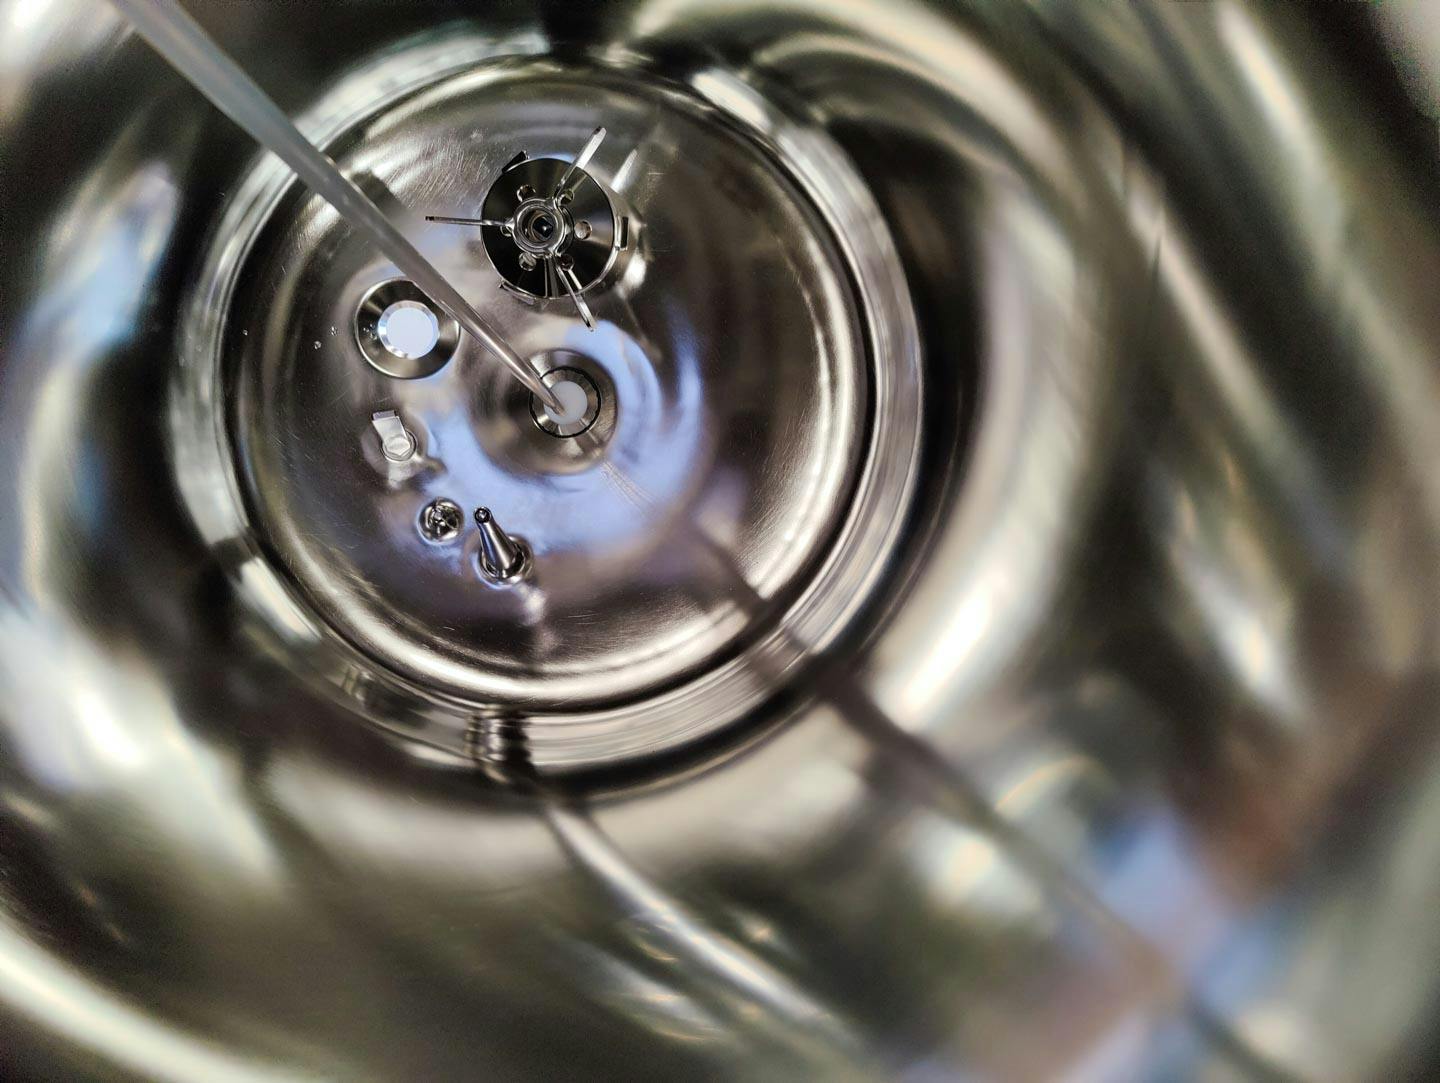 Edelstahl Maurer 130 Ltr. - Mirror-Polished Fraction Collector (Pharma Design) - Reactor de acero inoxidable - image 8